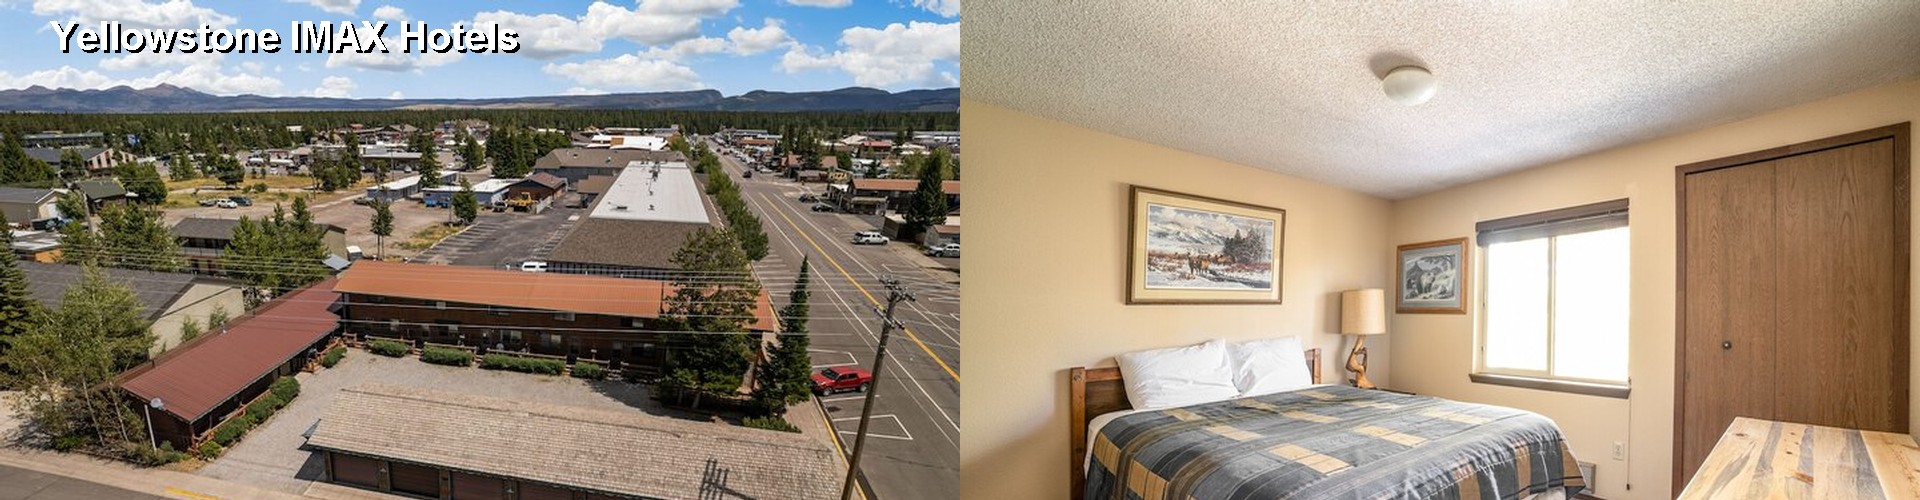 5 Best Hotels near Yellowstone IMAX